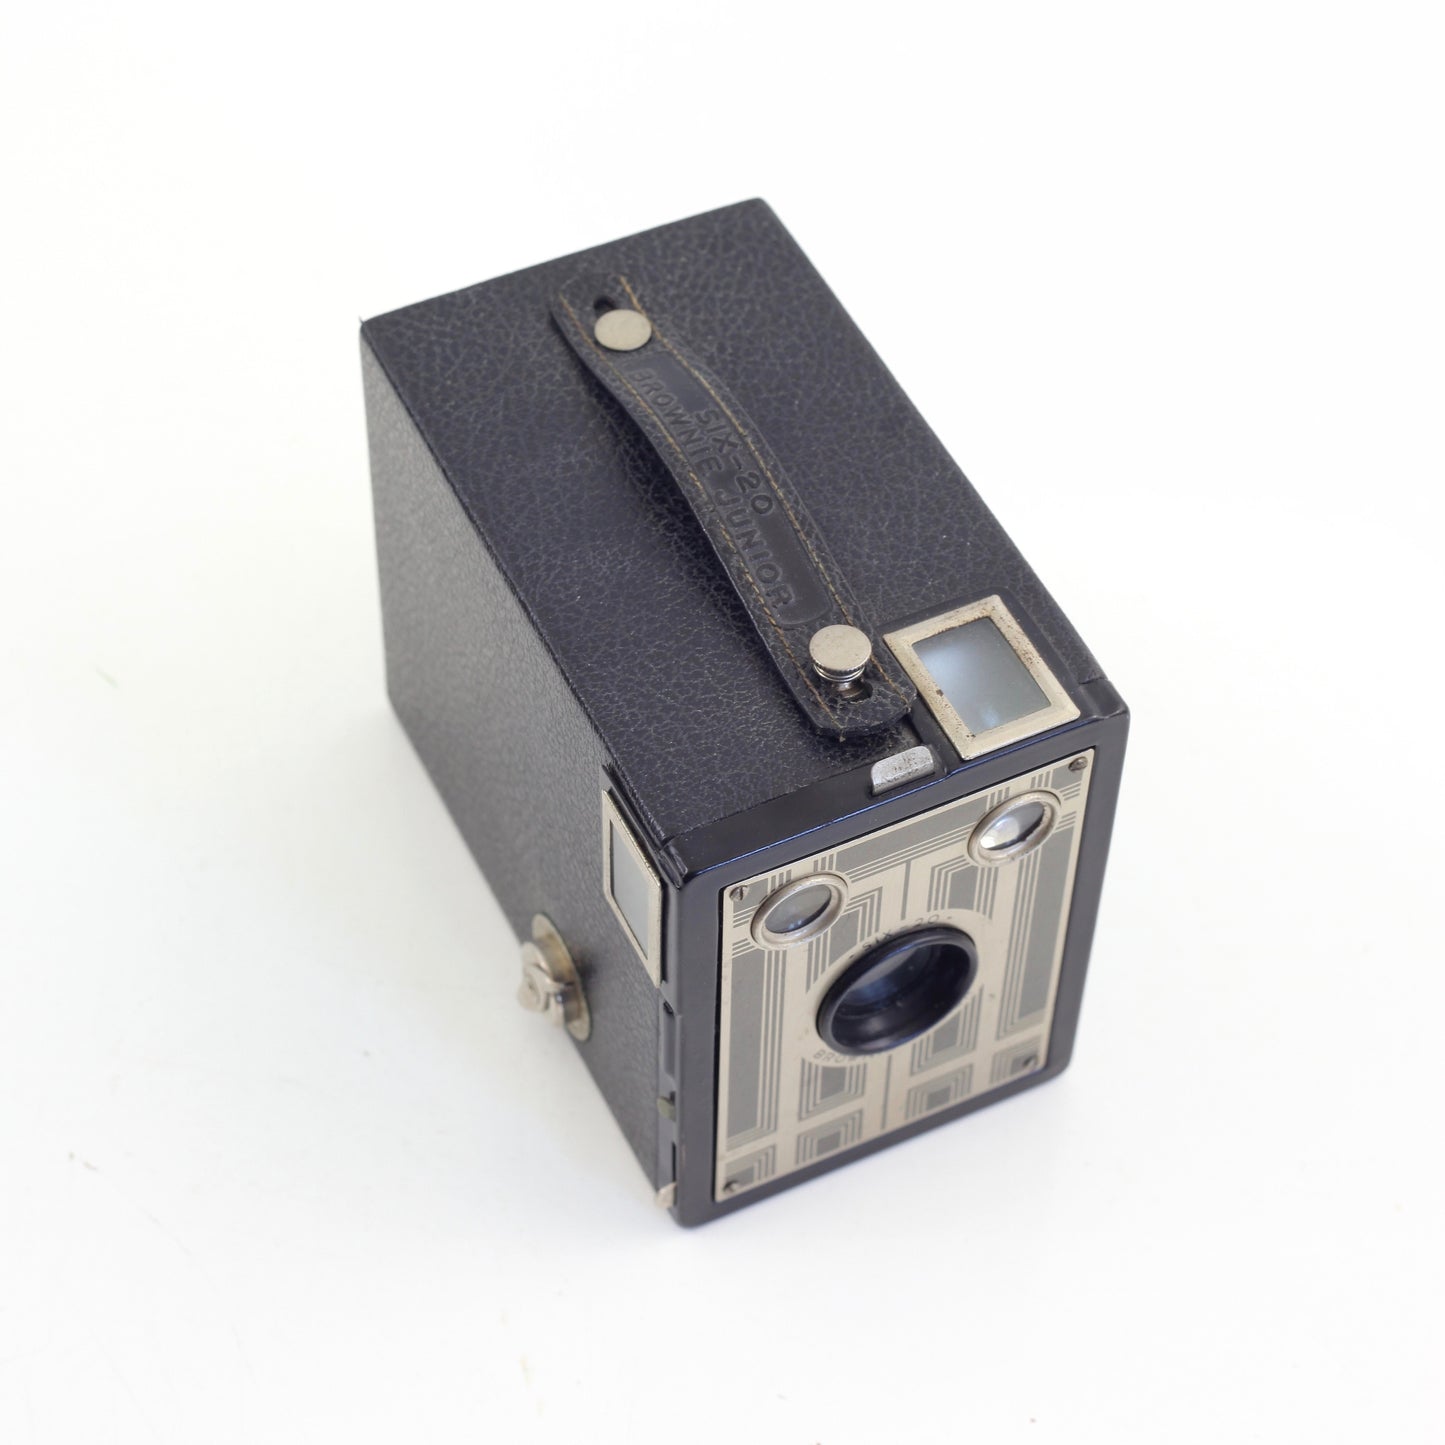 SOLD - Vintage 1930s Kodak Six-20 Brownie Junior